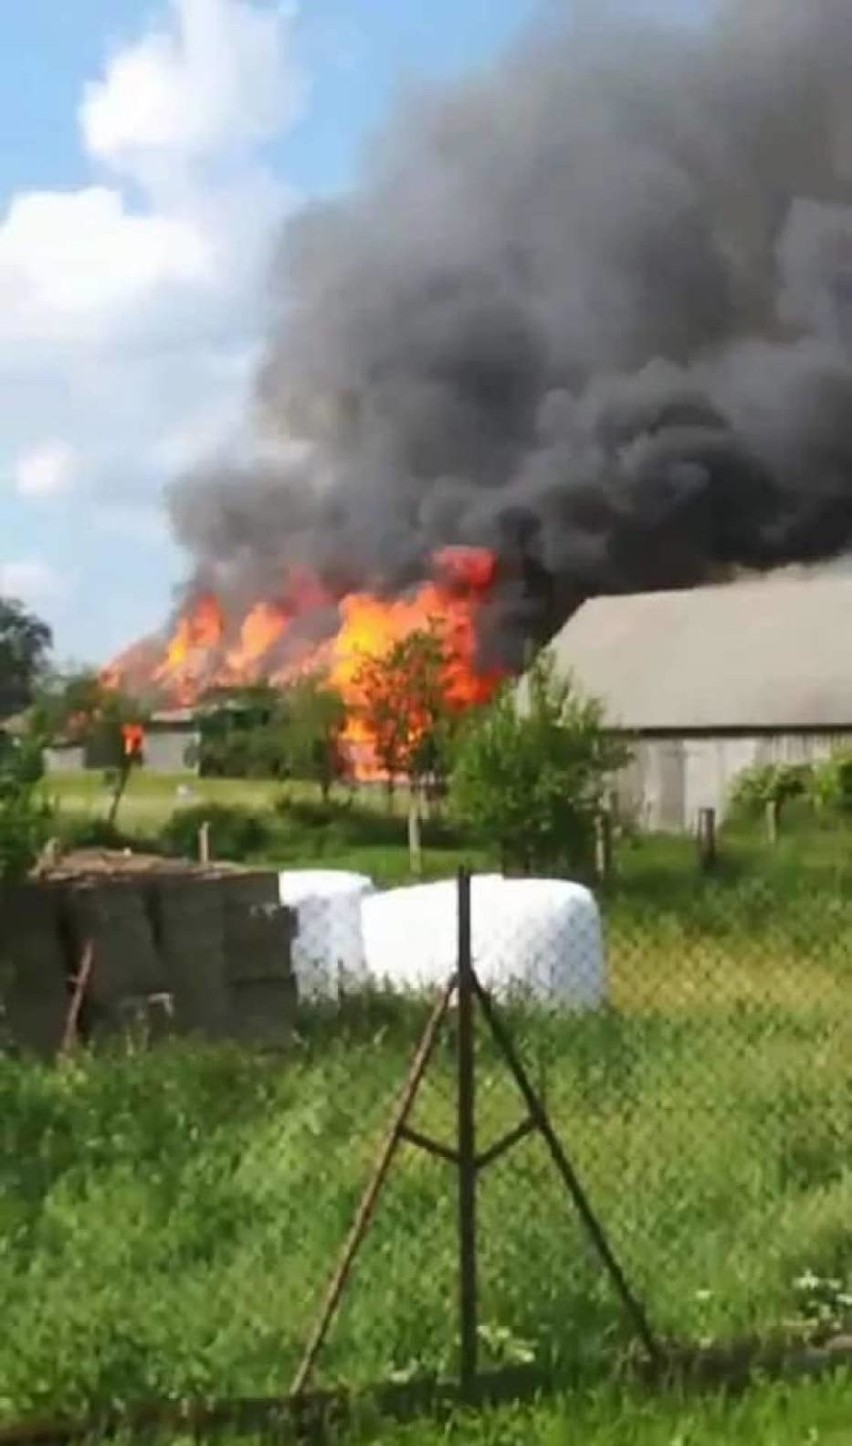 Pożar w Osowie. Rolnik stracił maszyny i część budynków. Potrzebna jest pomoc [ZDJĘCIA]